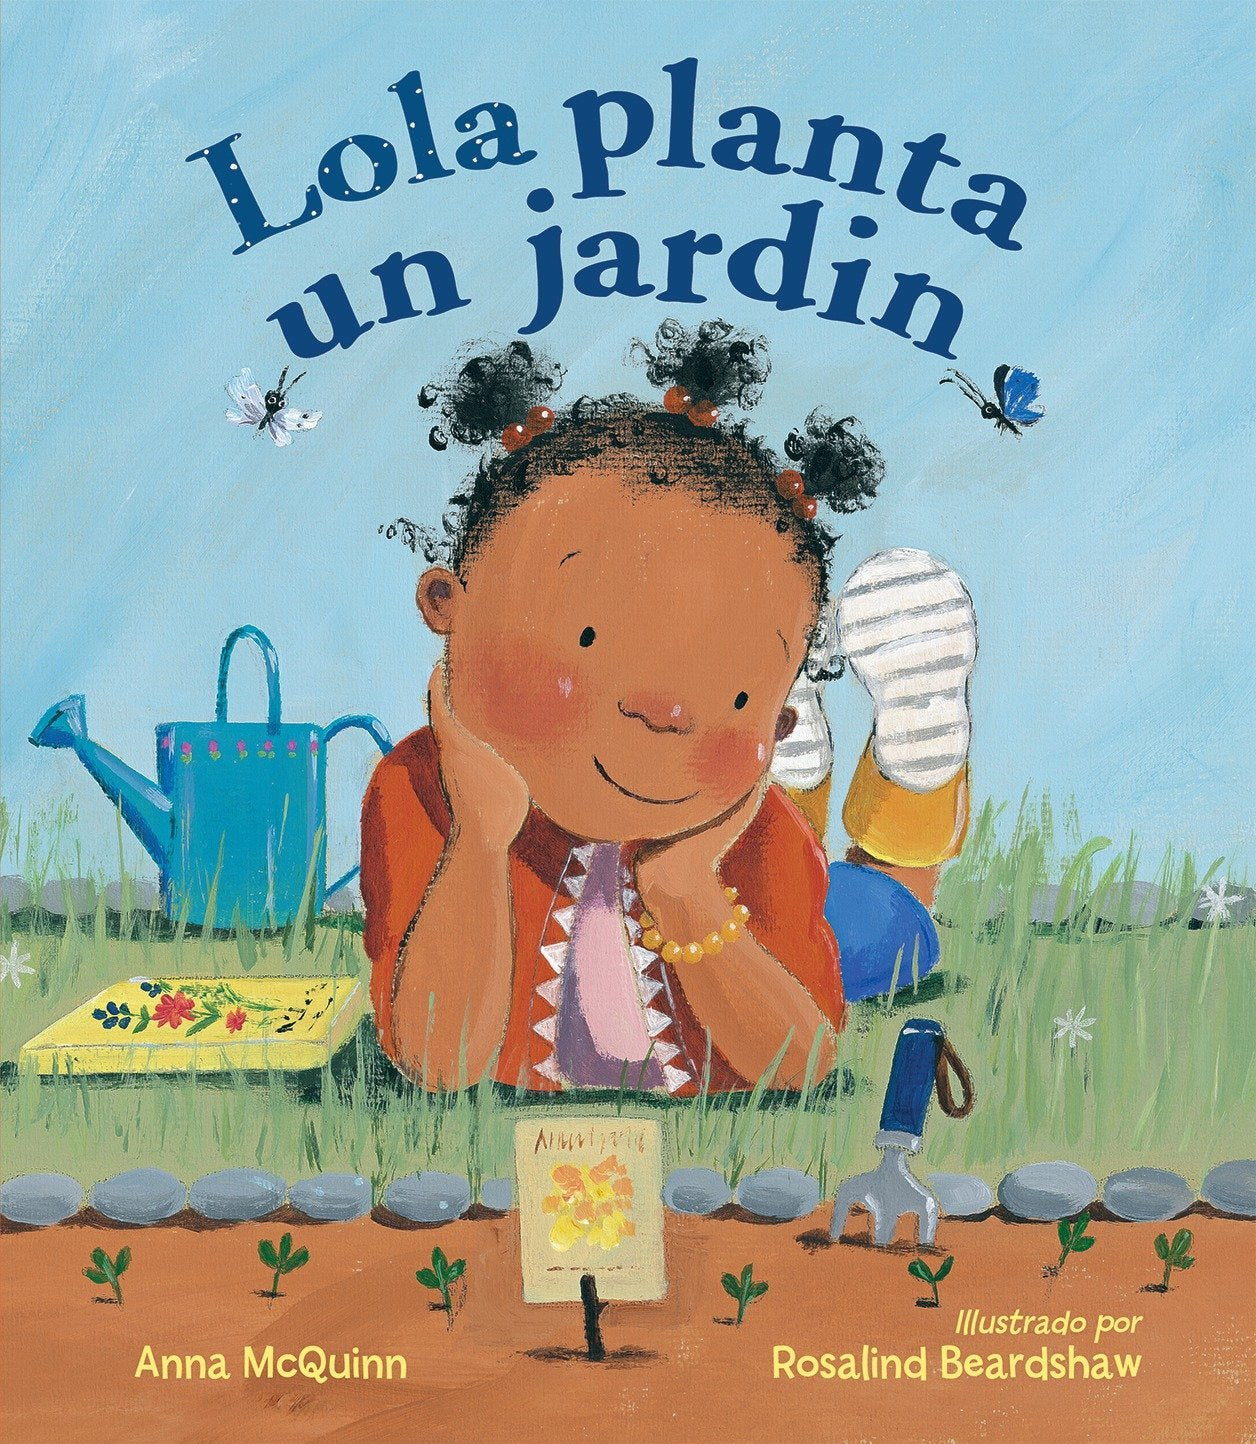 Lola planta un jardín